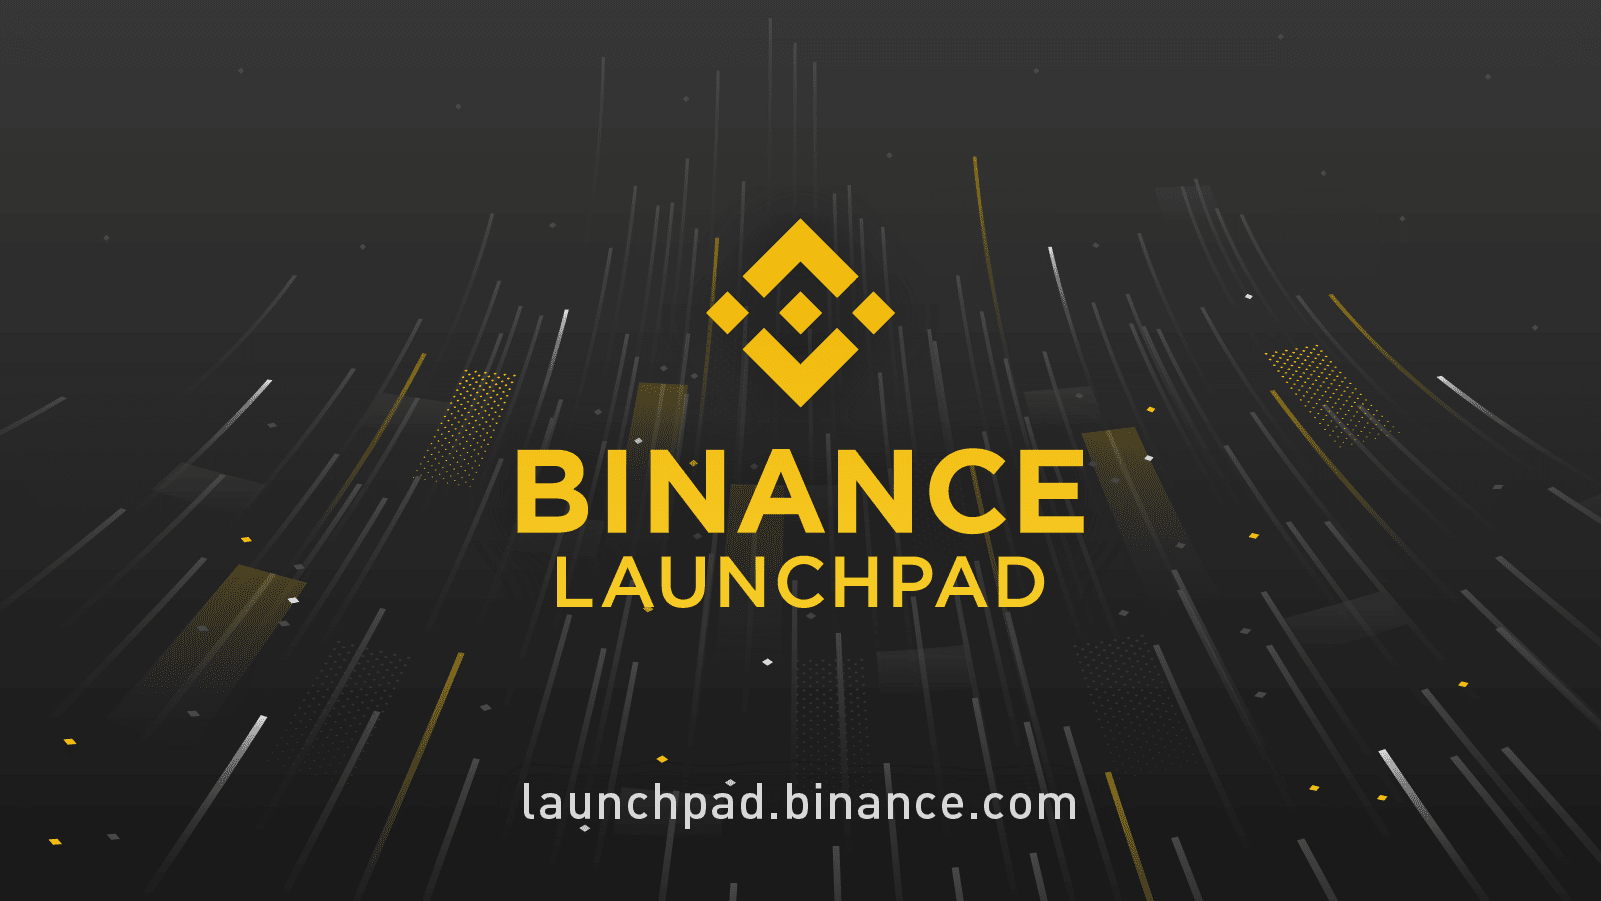 Binance Launchpad là gì?